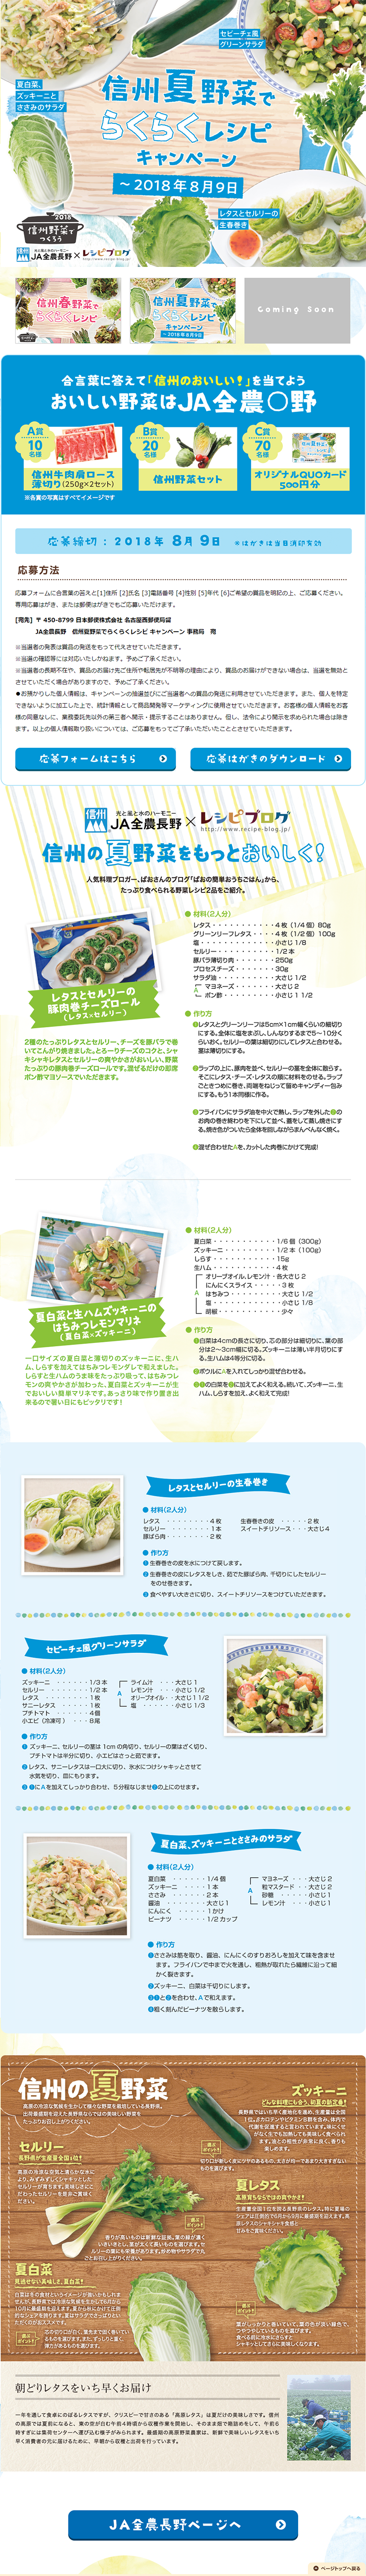 信州夏野菜でらくらくレシピキャンペーン_pc_1